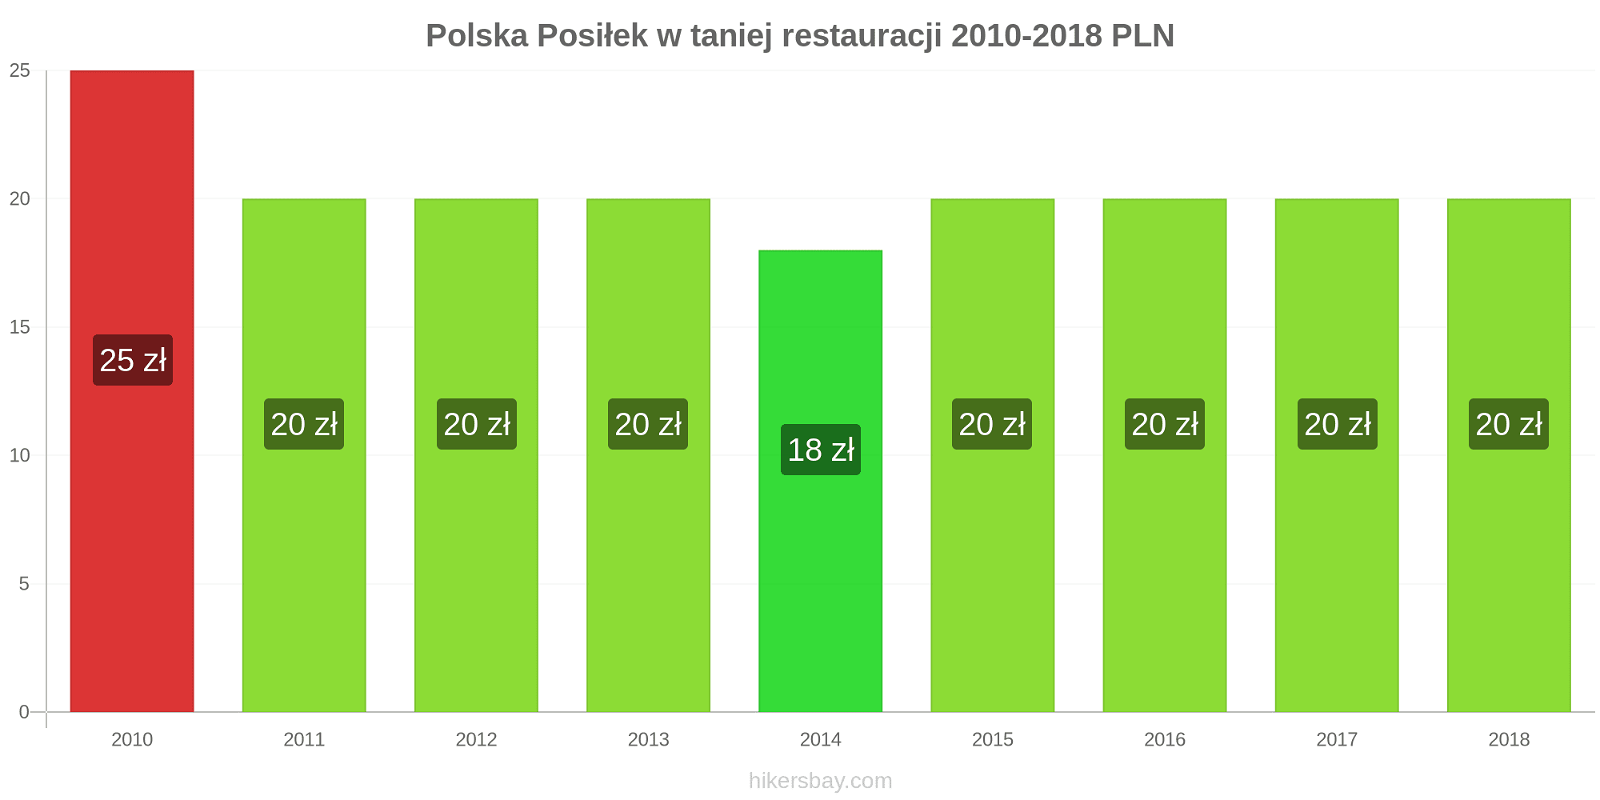 Polska zmiany cen Posiłek w taniej restauracji hikersbay.com